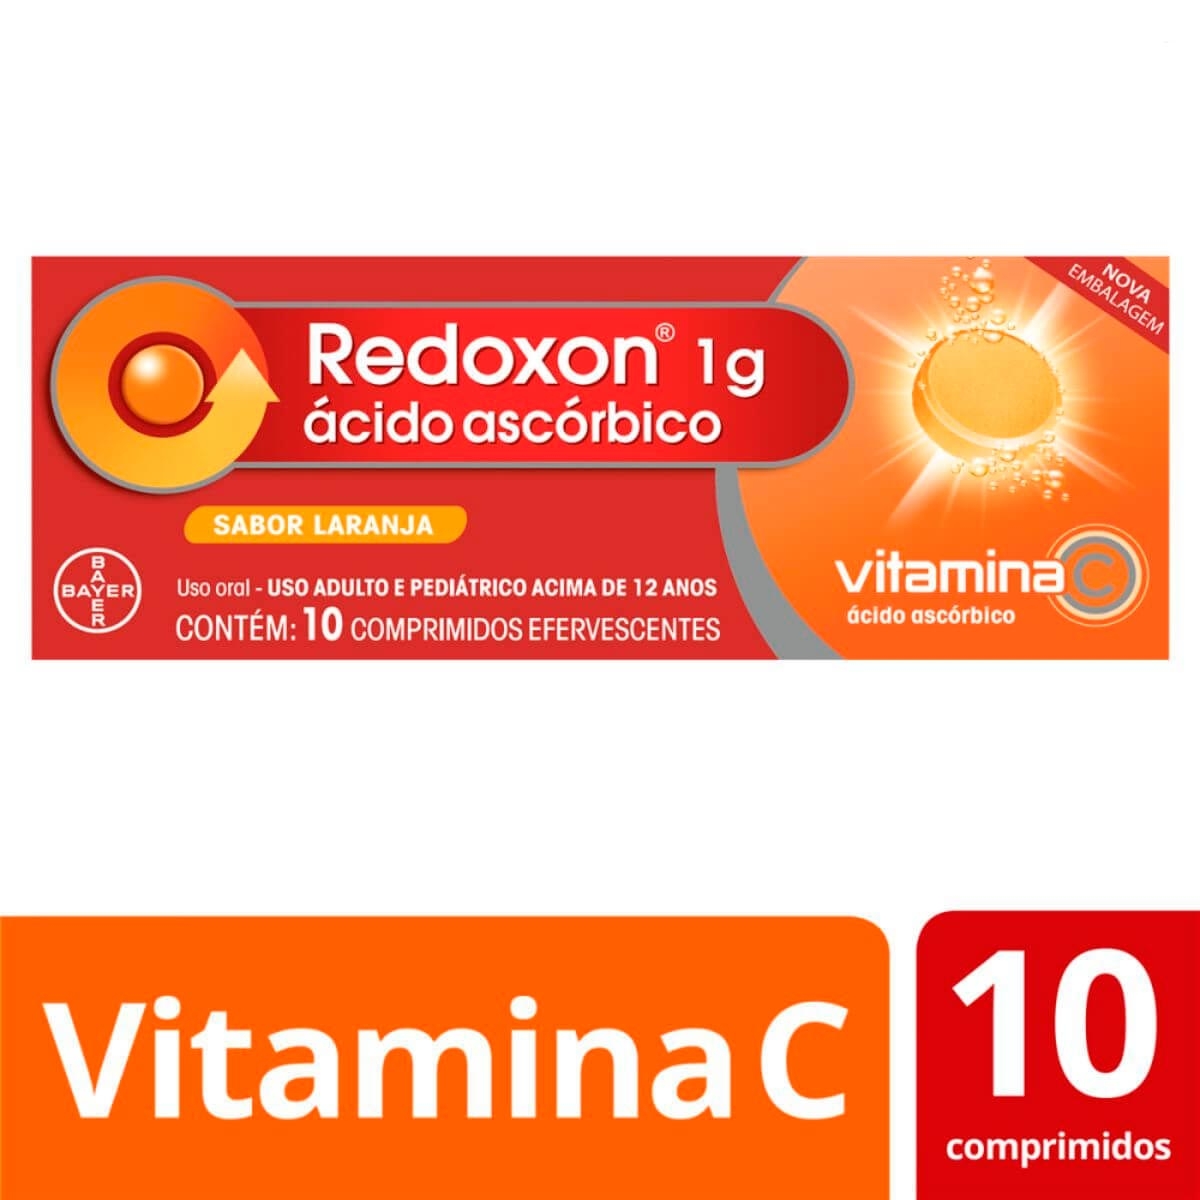 Farmacias del Ahorro, Redoxon Gotas 200mg de Vitamina C, caja con frasco  con 20 ml de solución, sabor caramelo